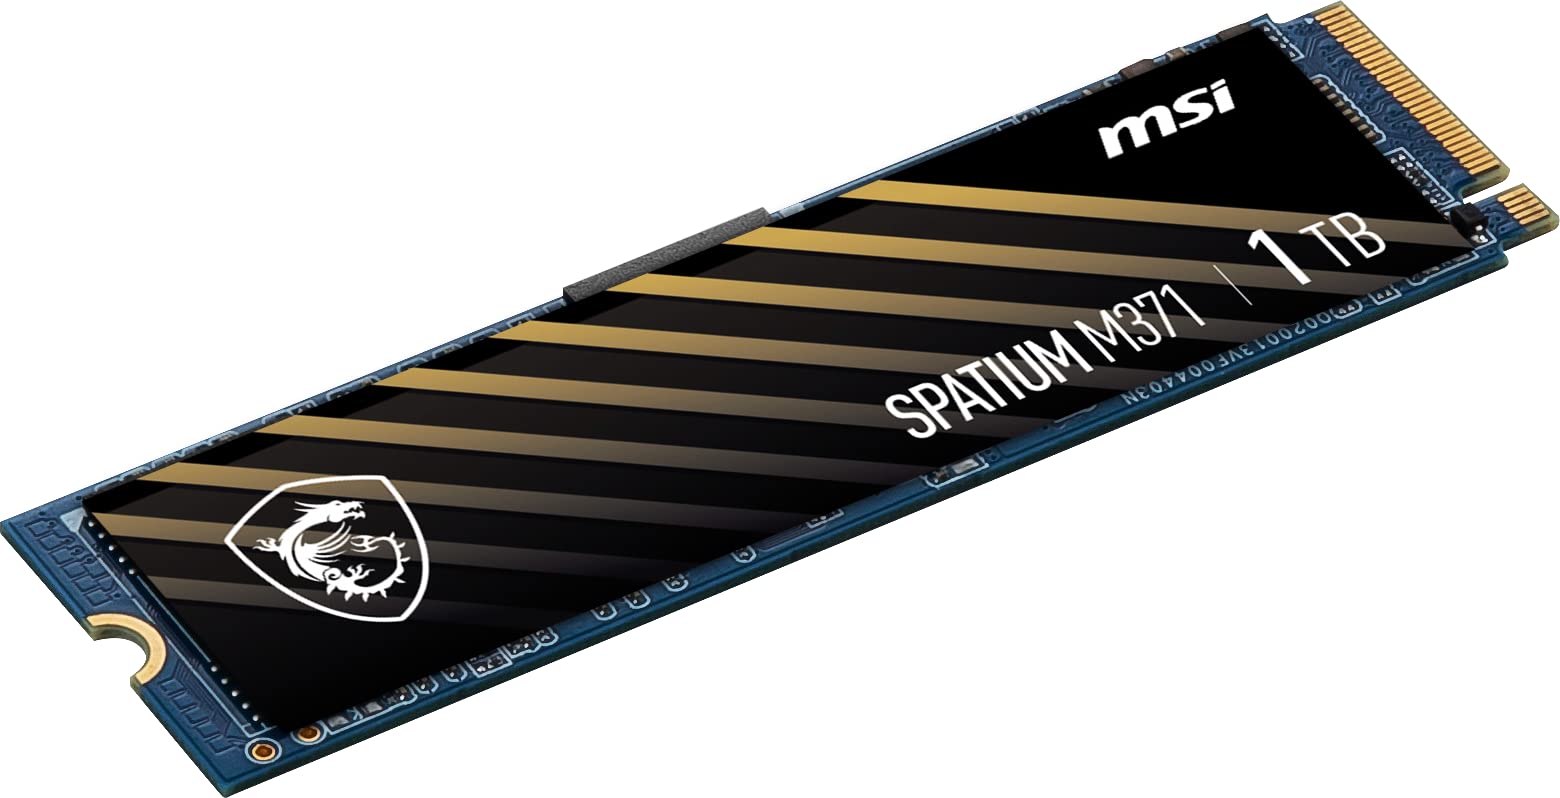 MSI Spatium M371 NVMe M.2 1TB PCIe Gen 3 $34.99 shipped @ Amazon $35